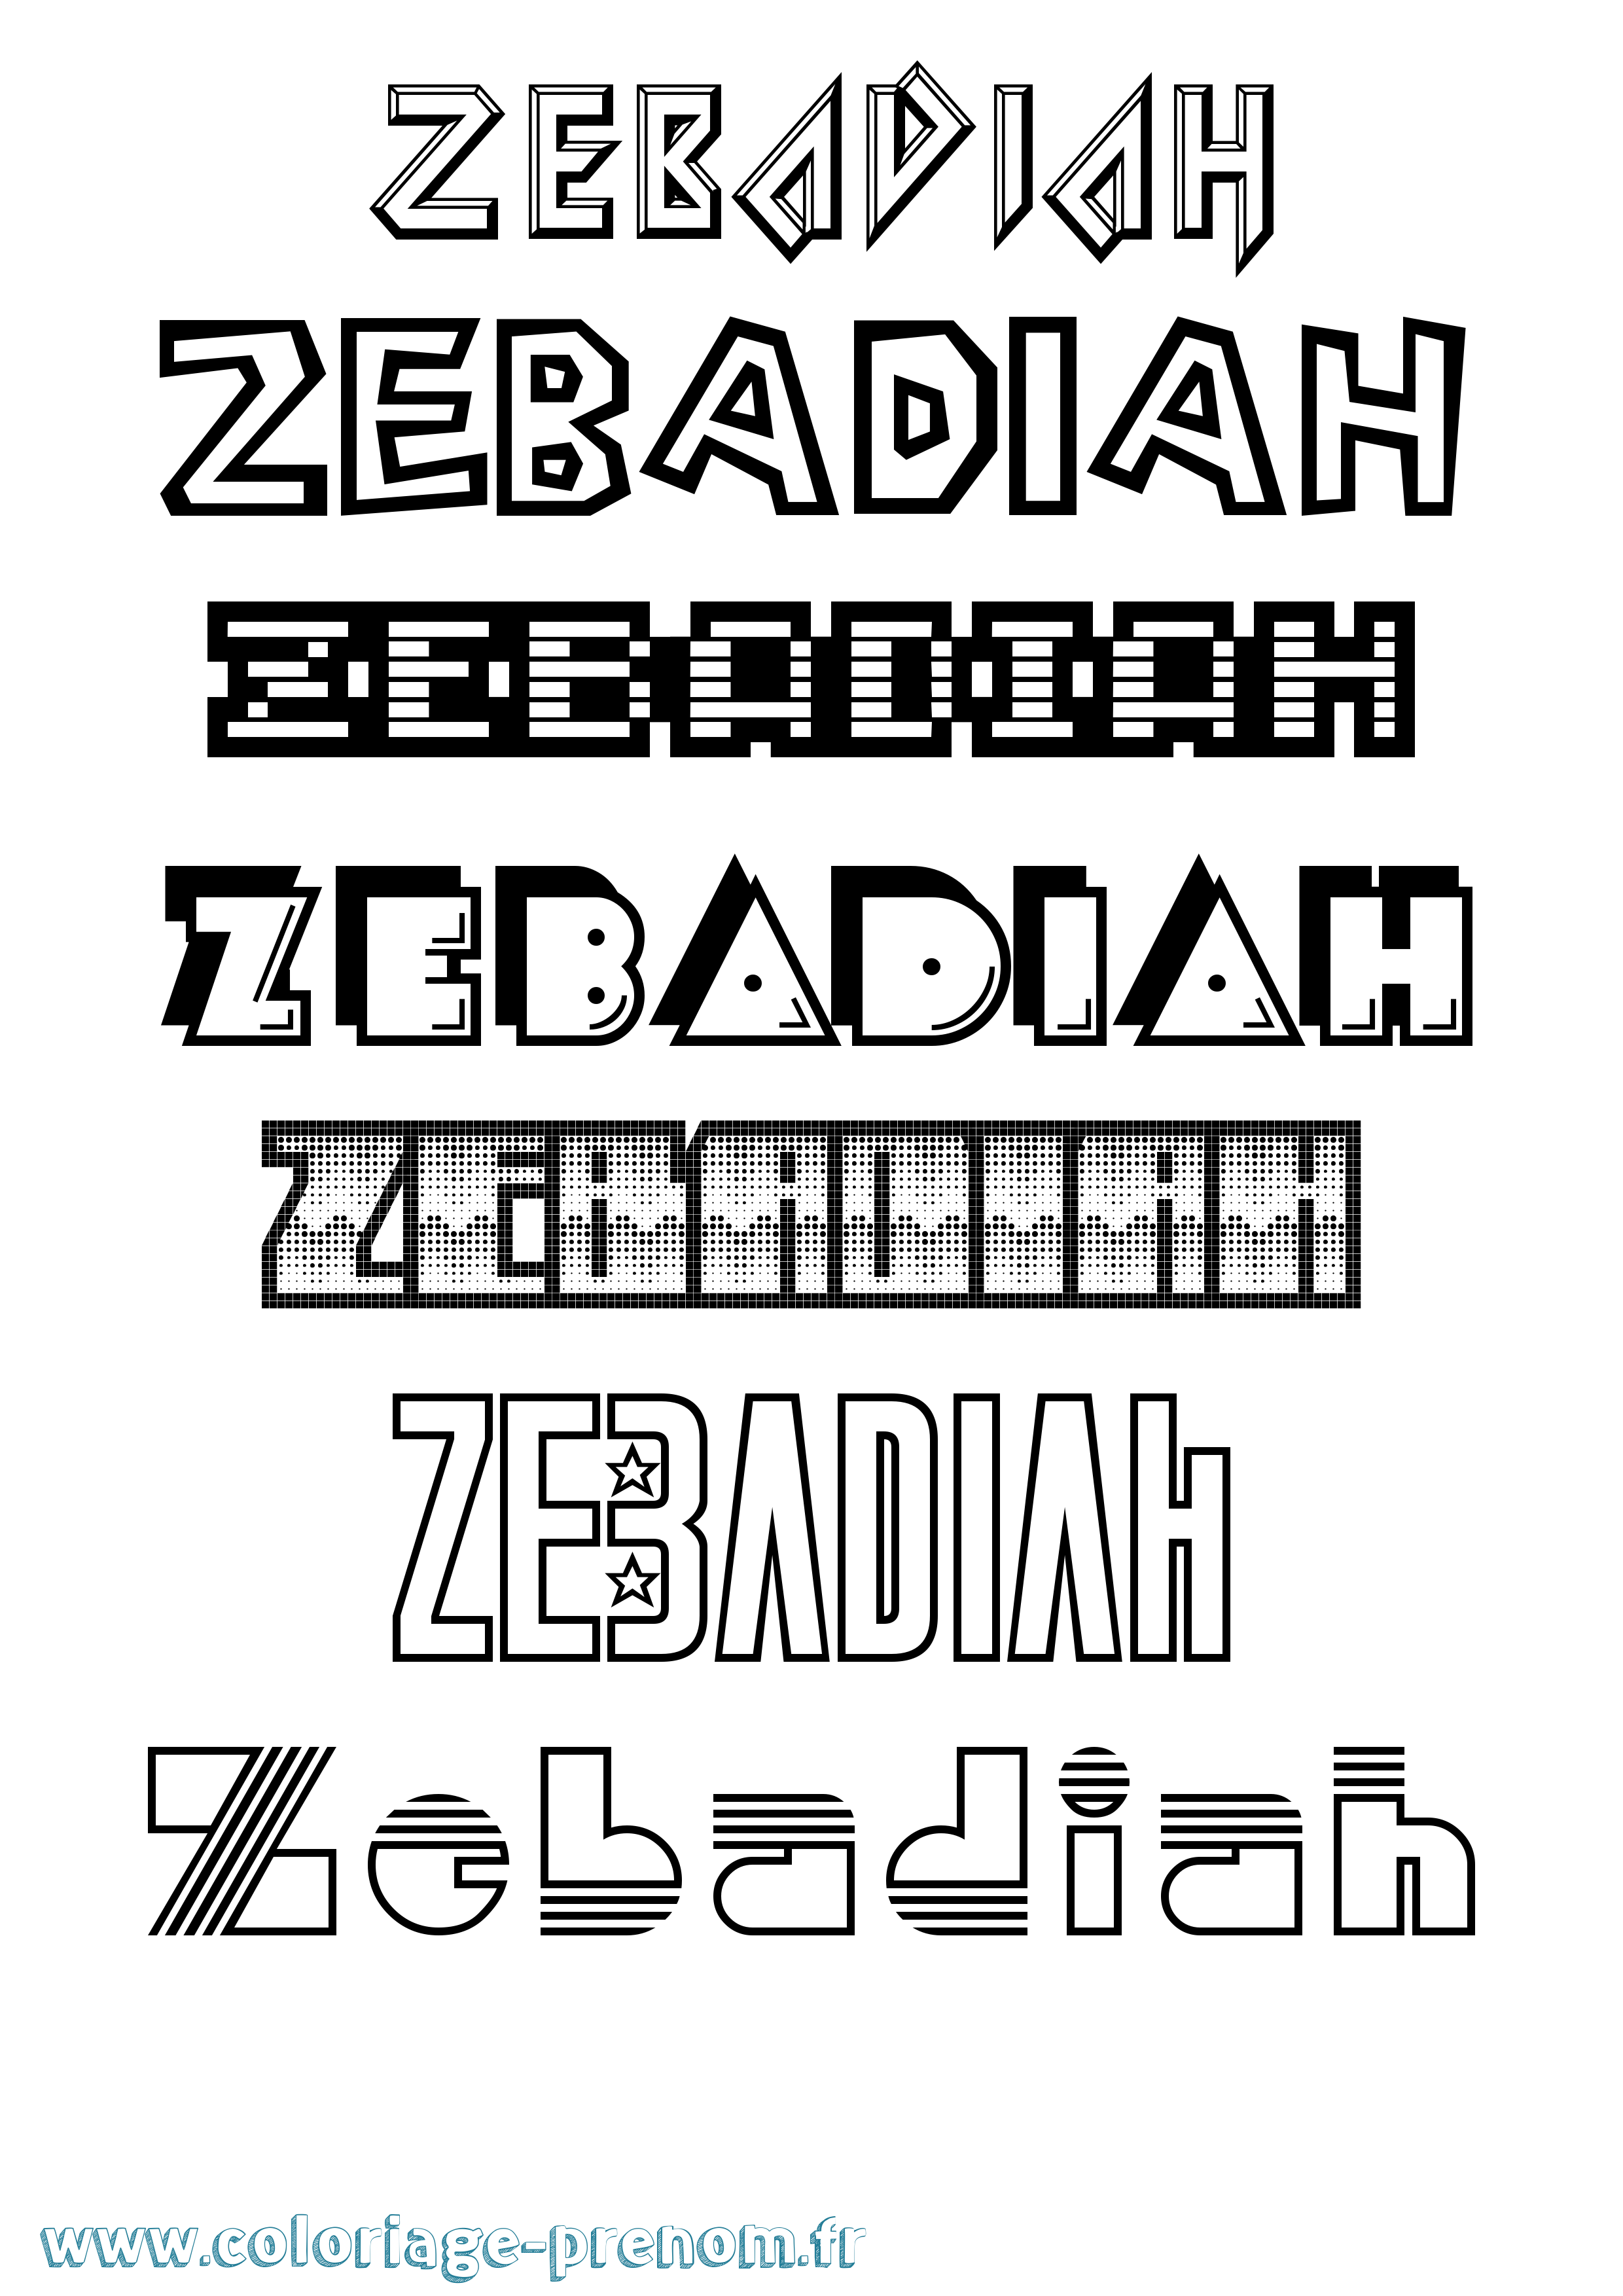 Coloriage prénom Zebadiah Jeux Vidéos